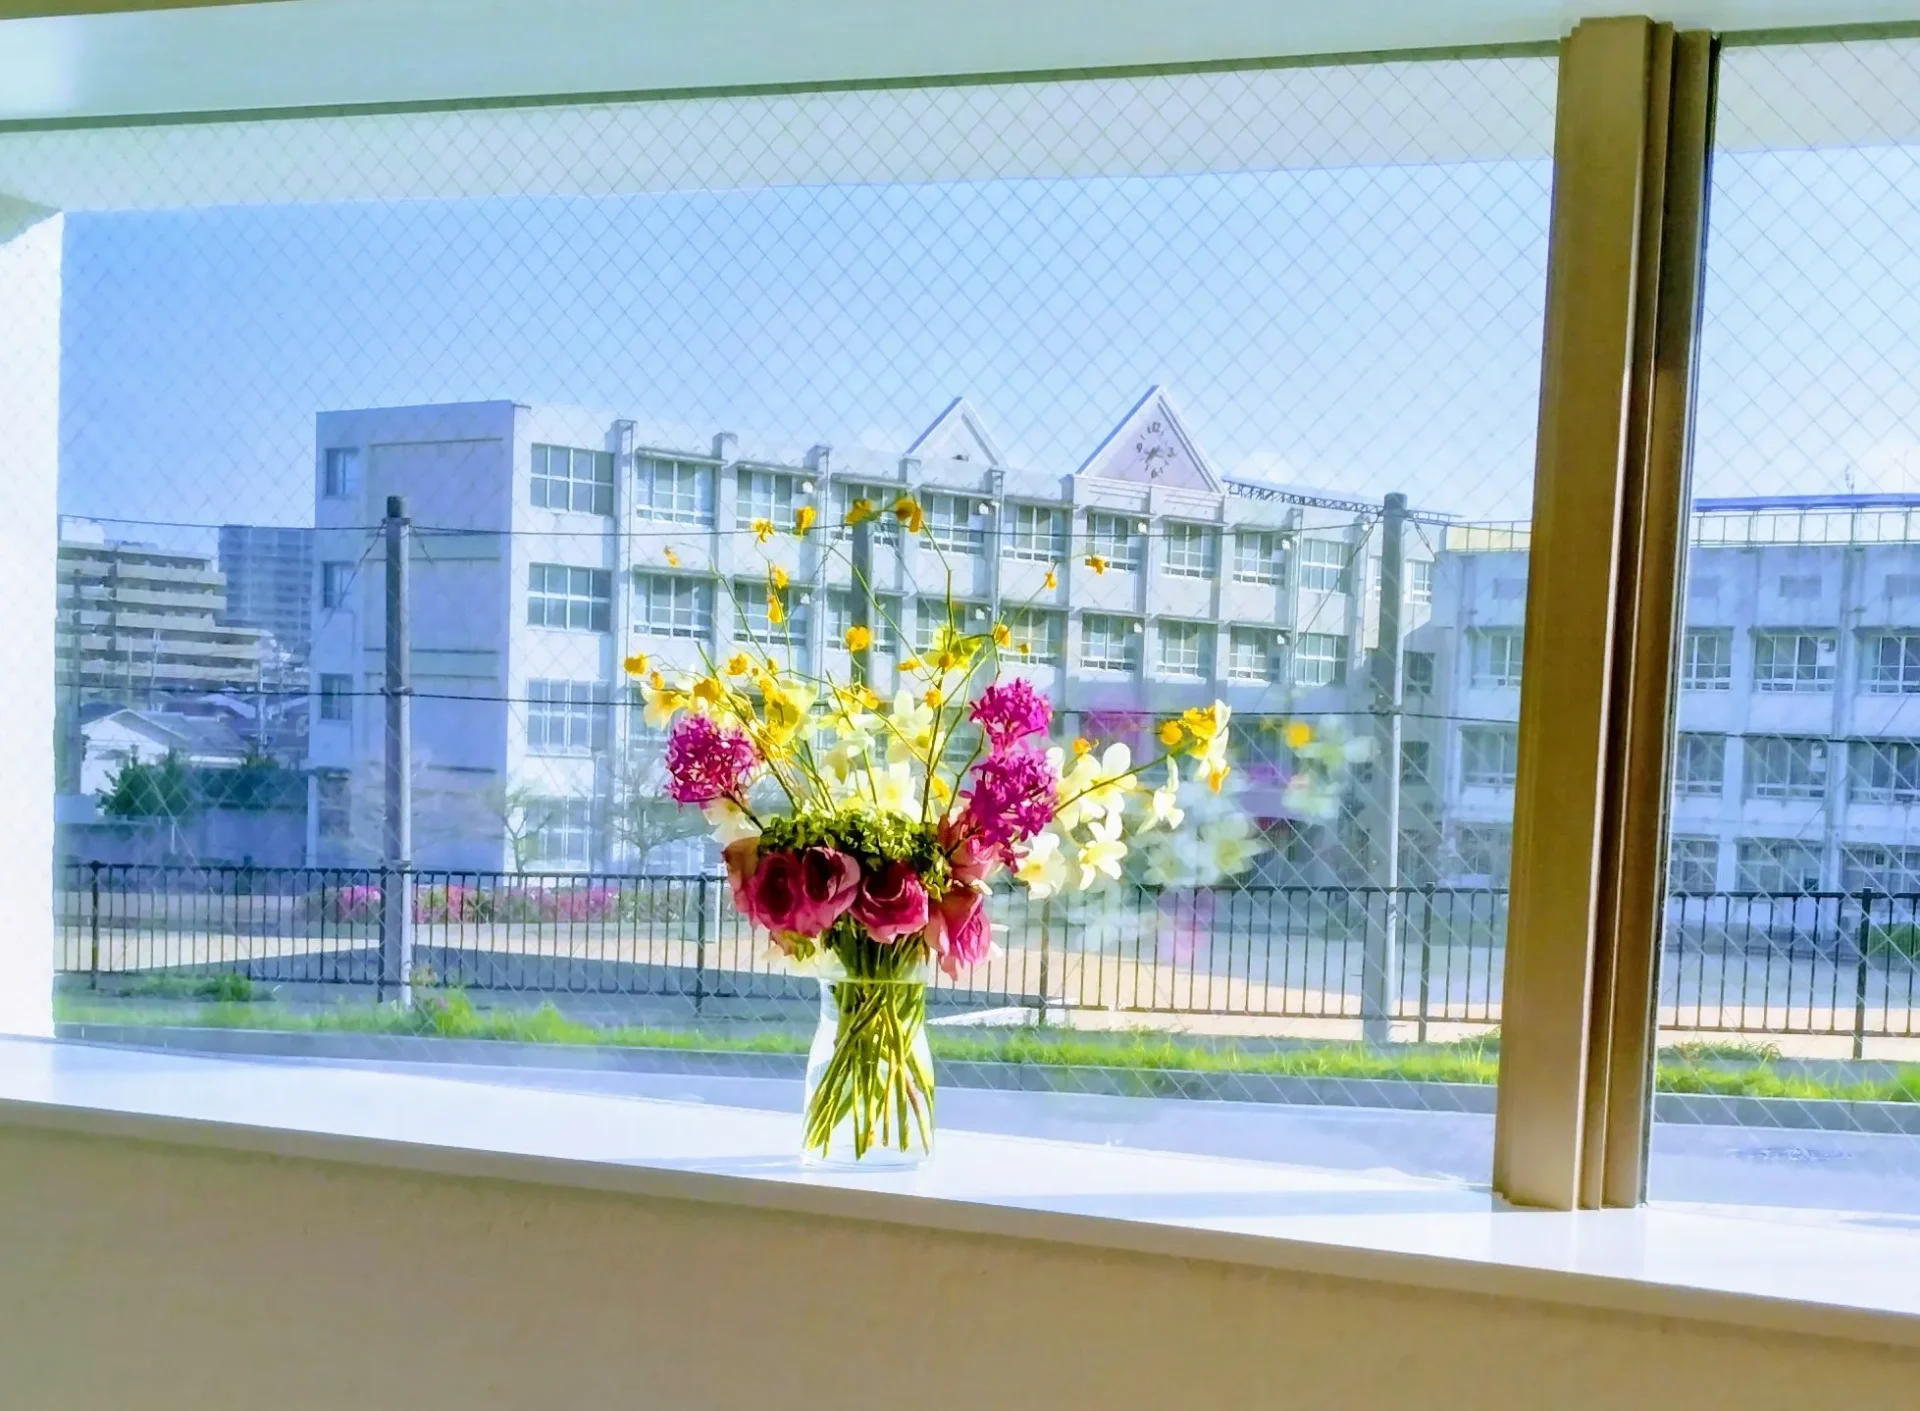 歯科医院の待合室に置かれた花と上野芝小学校の校舎